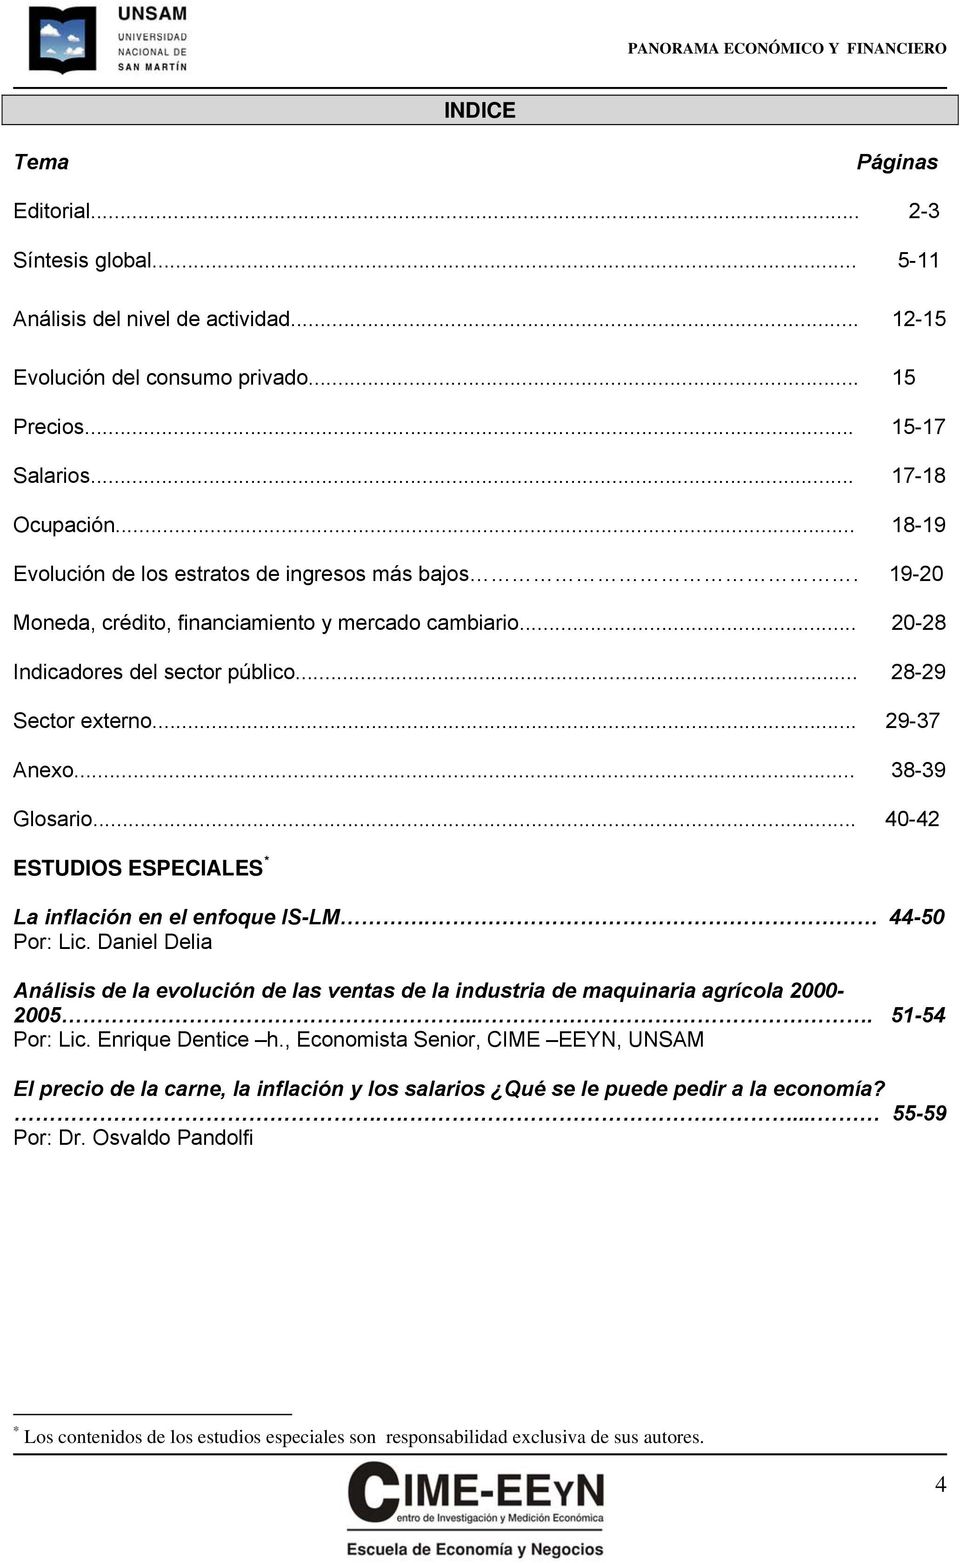 .. 38-39 Glosario... 40-42 ESTUDIOS ESPECIALES * La inflación en el enfoque IS-LM. 44-50 Por: Lic. Daniel Delia Análisis de la evolución de las ventas de la industria de maquinaria agrícola 2000-2005.